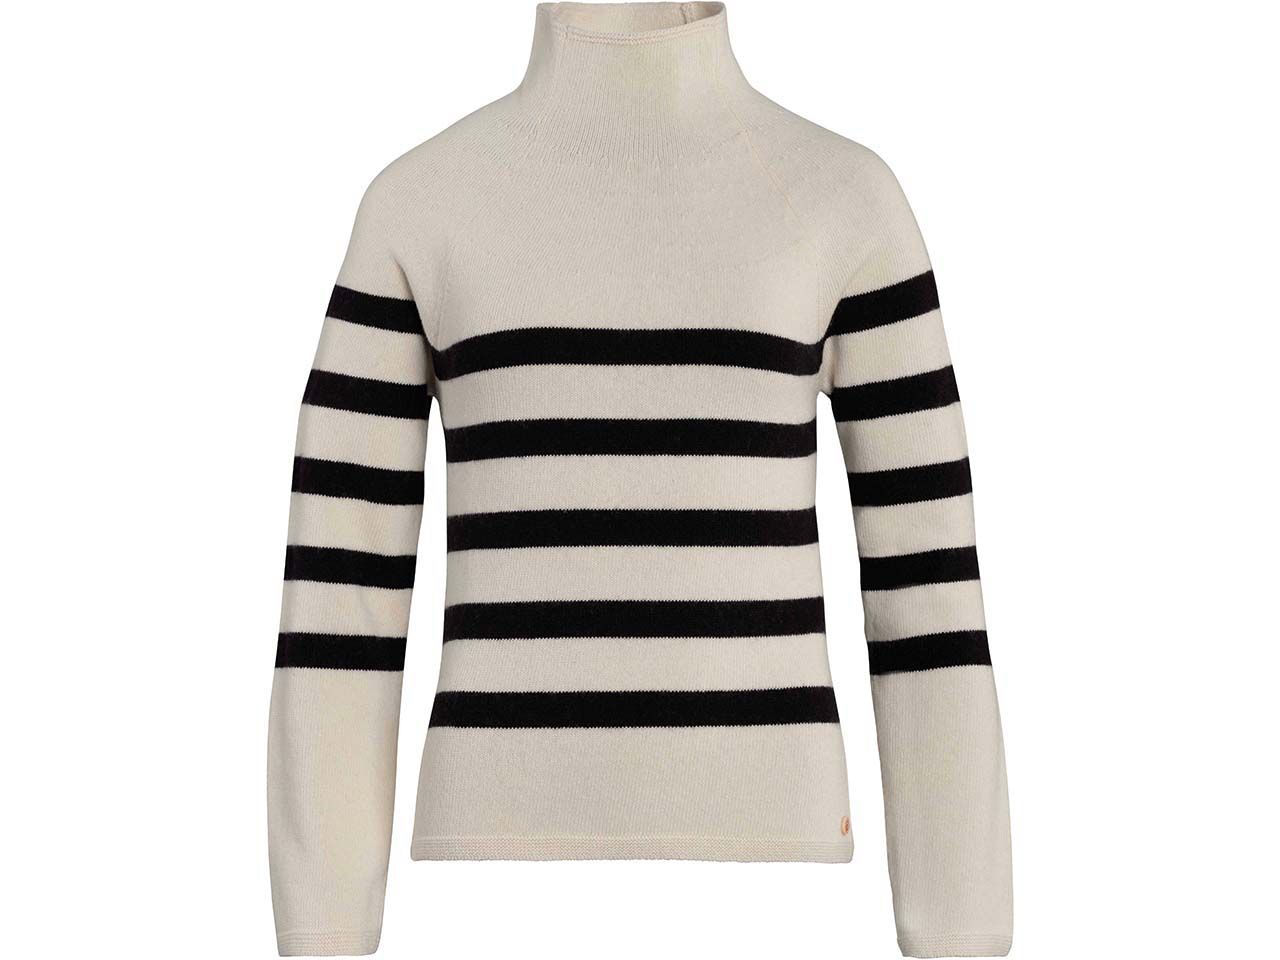 Living Crafts Bio-Damen-Pullover "Paloma" mit hohem Kragen, black/cream, Gr. XL product